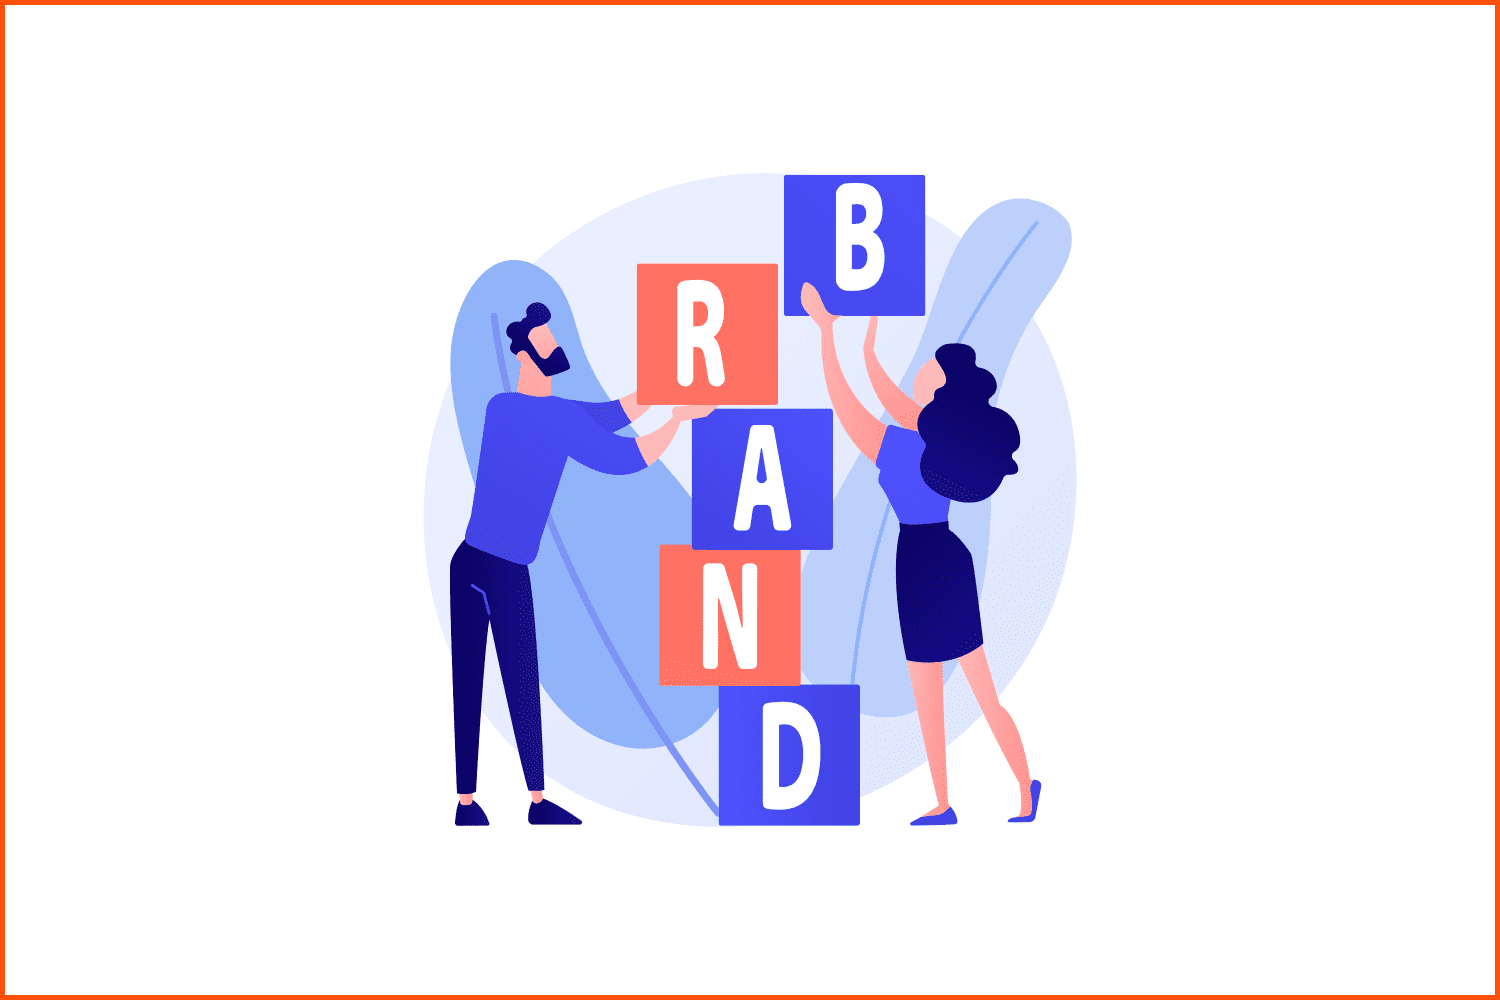 Build a brand.